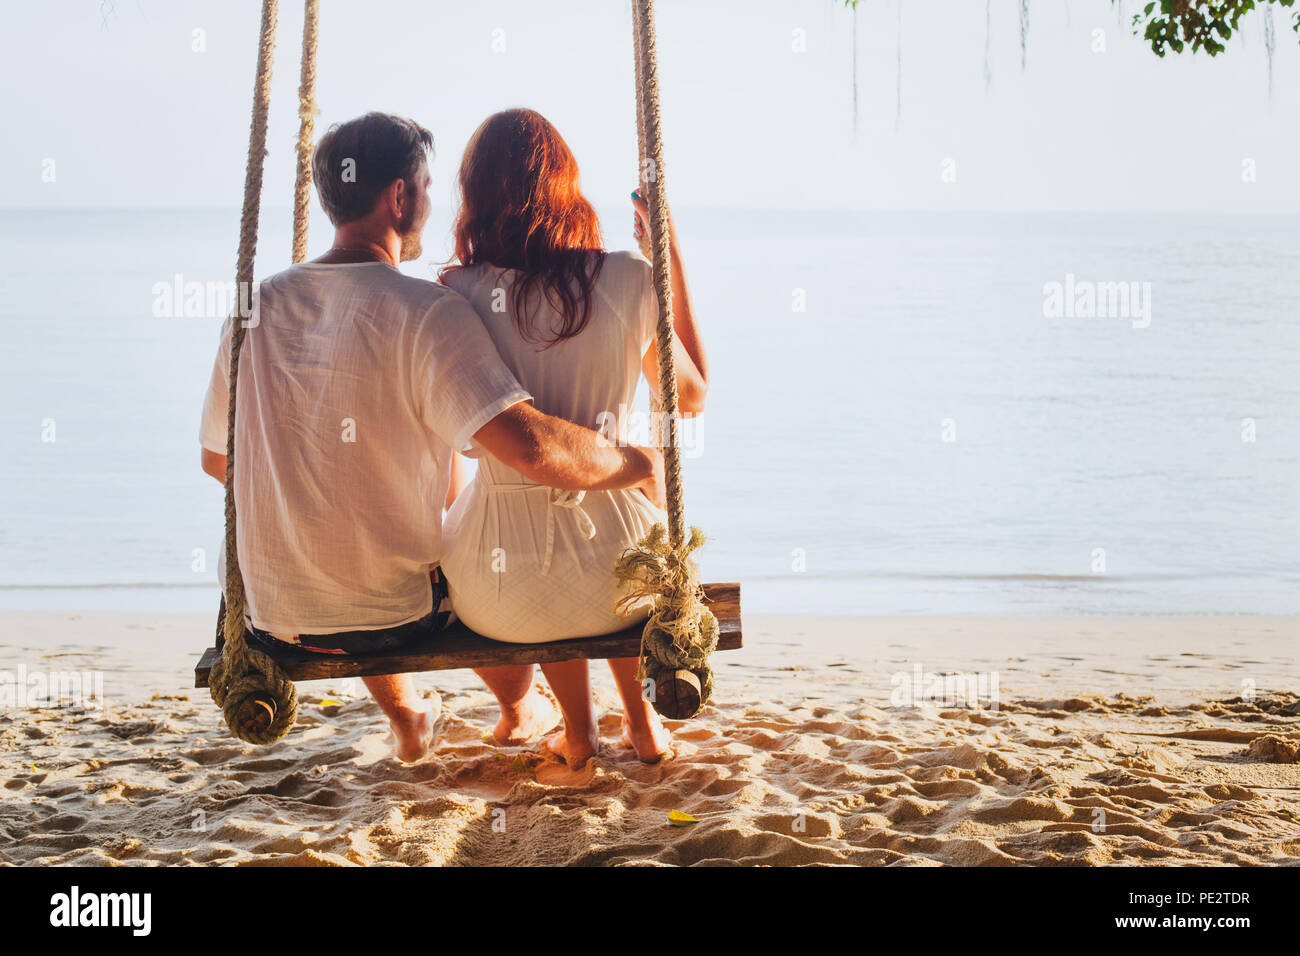 couple on beach holidays, family romantic honeymoon vacation Stock Photo